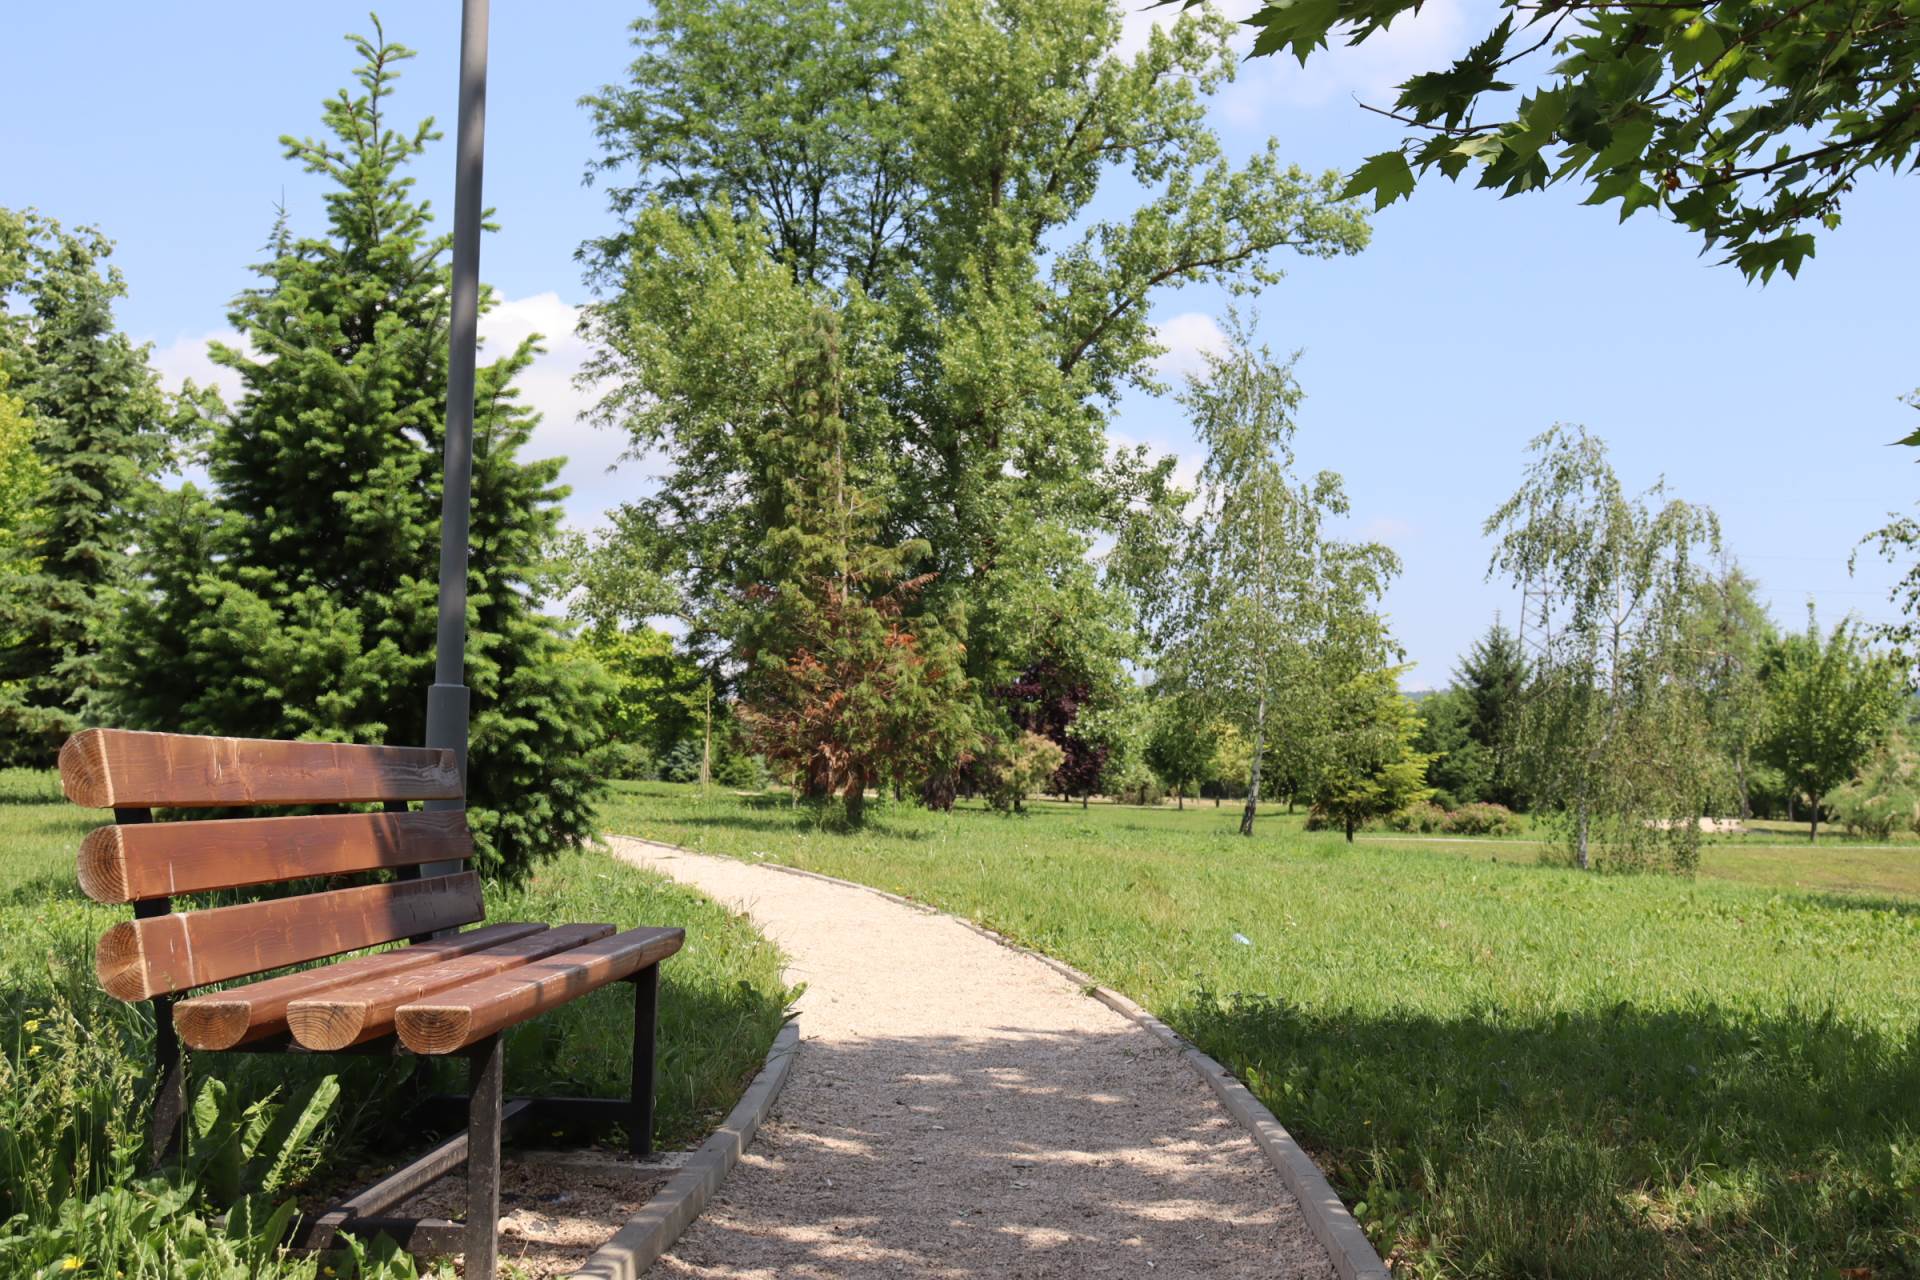  Botanička bašta u Banjaluci. 